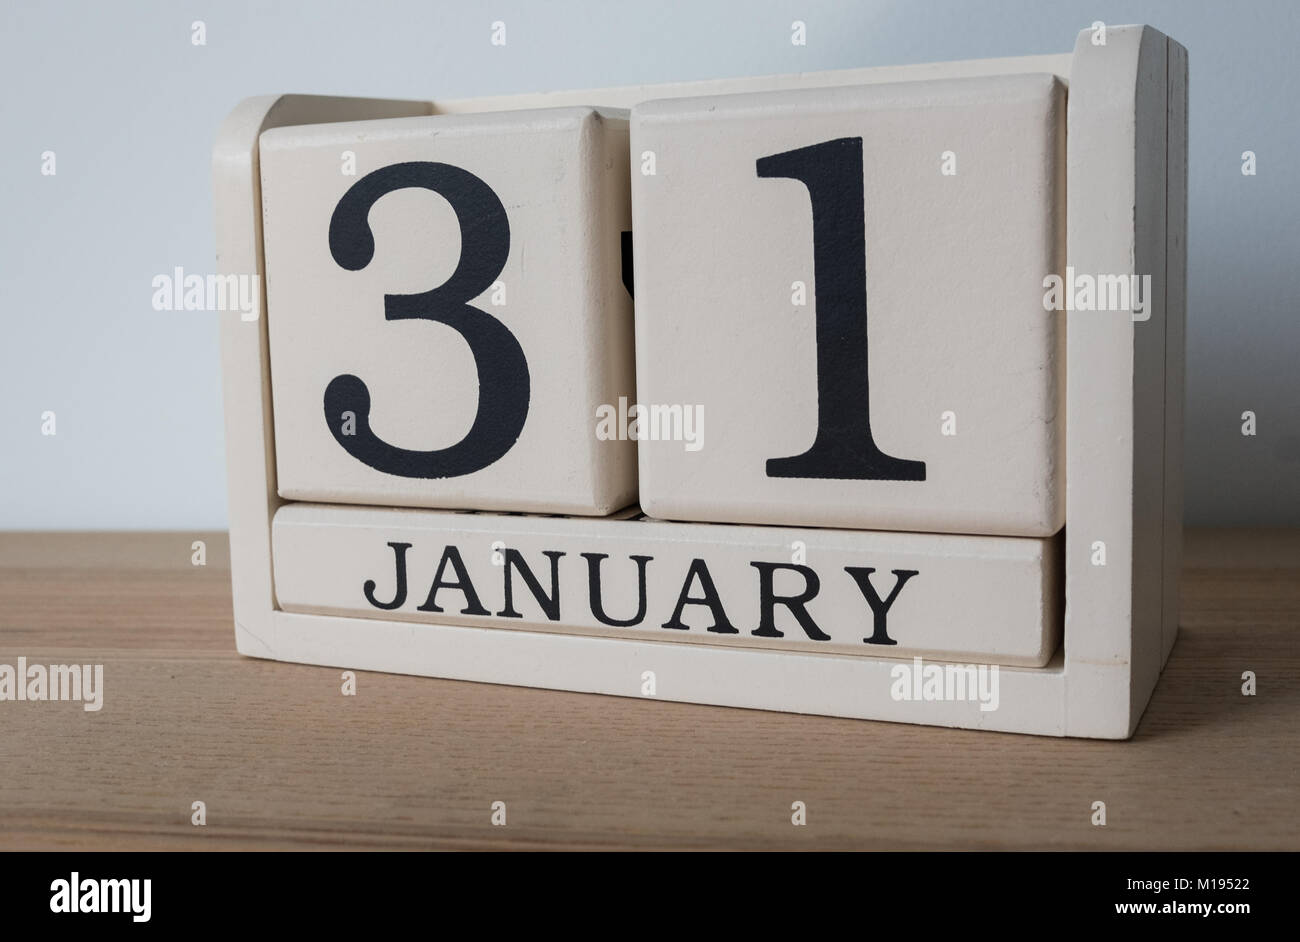 El 31 de enero, fecha en el calendario. Autoevaluación plazo impuesto para trabajadores autónomos en el REINO UNIDO Foto de stock